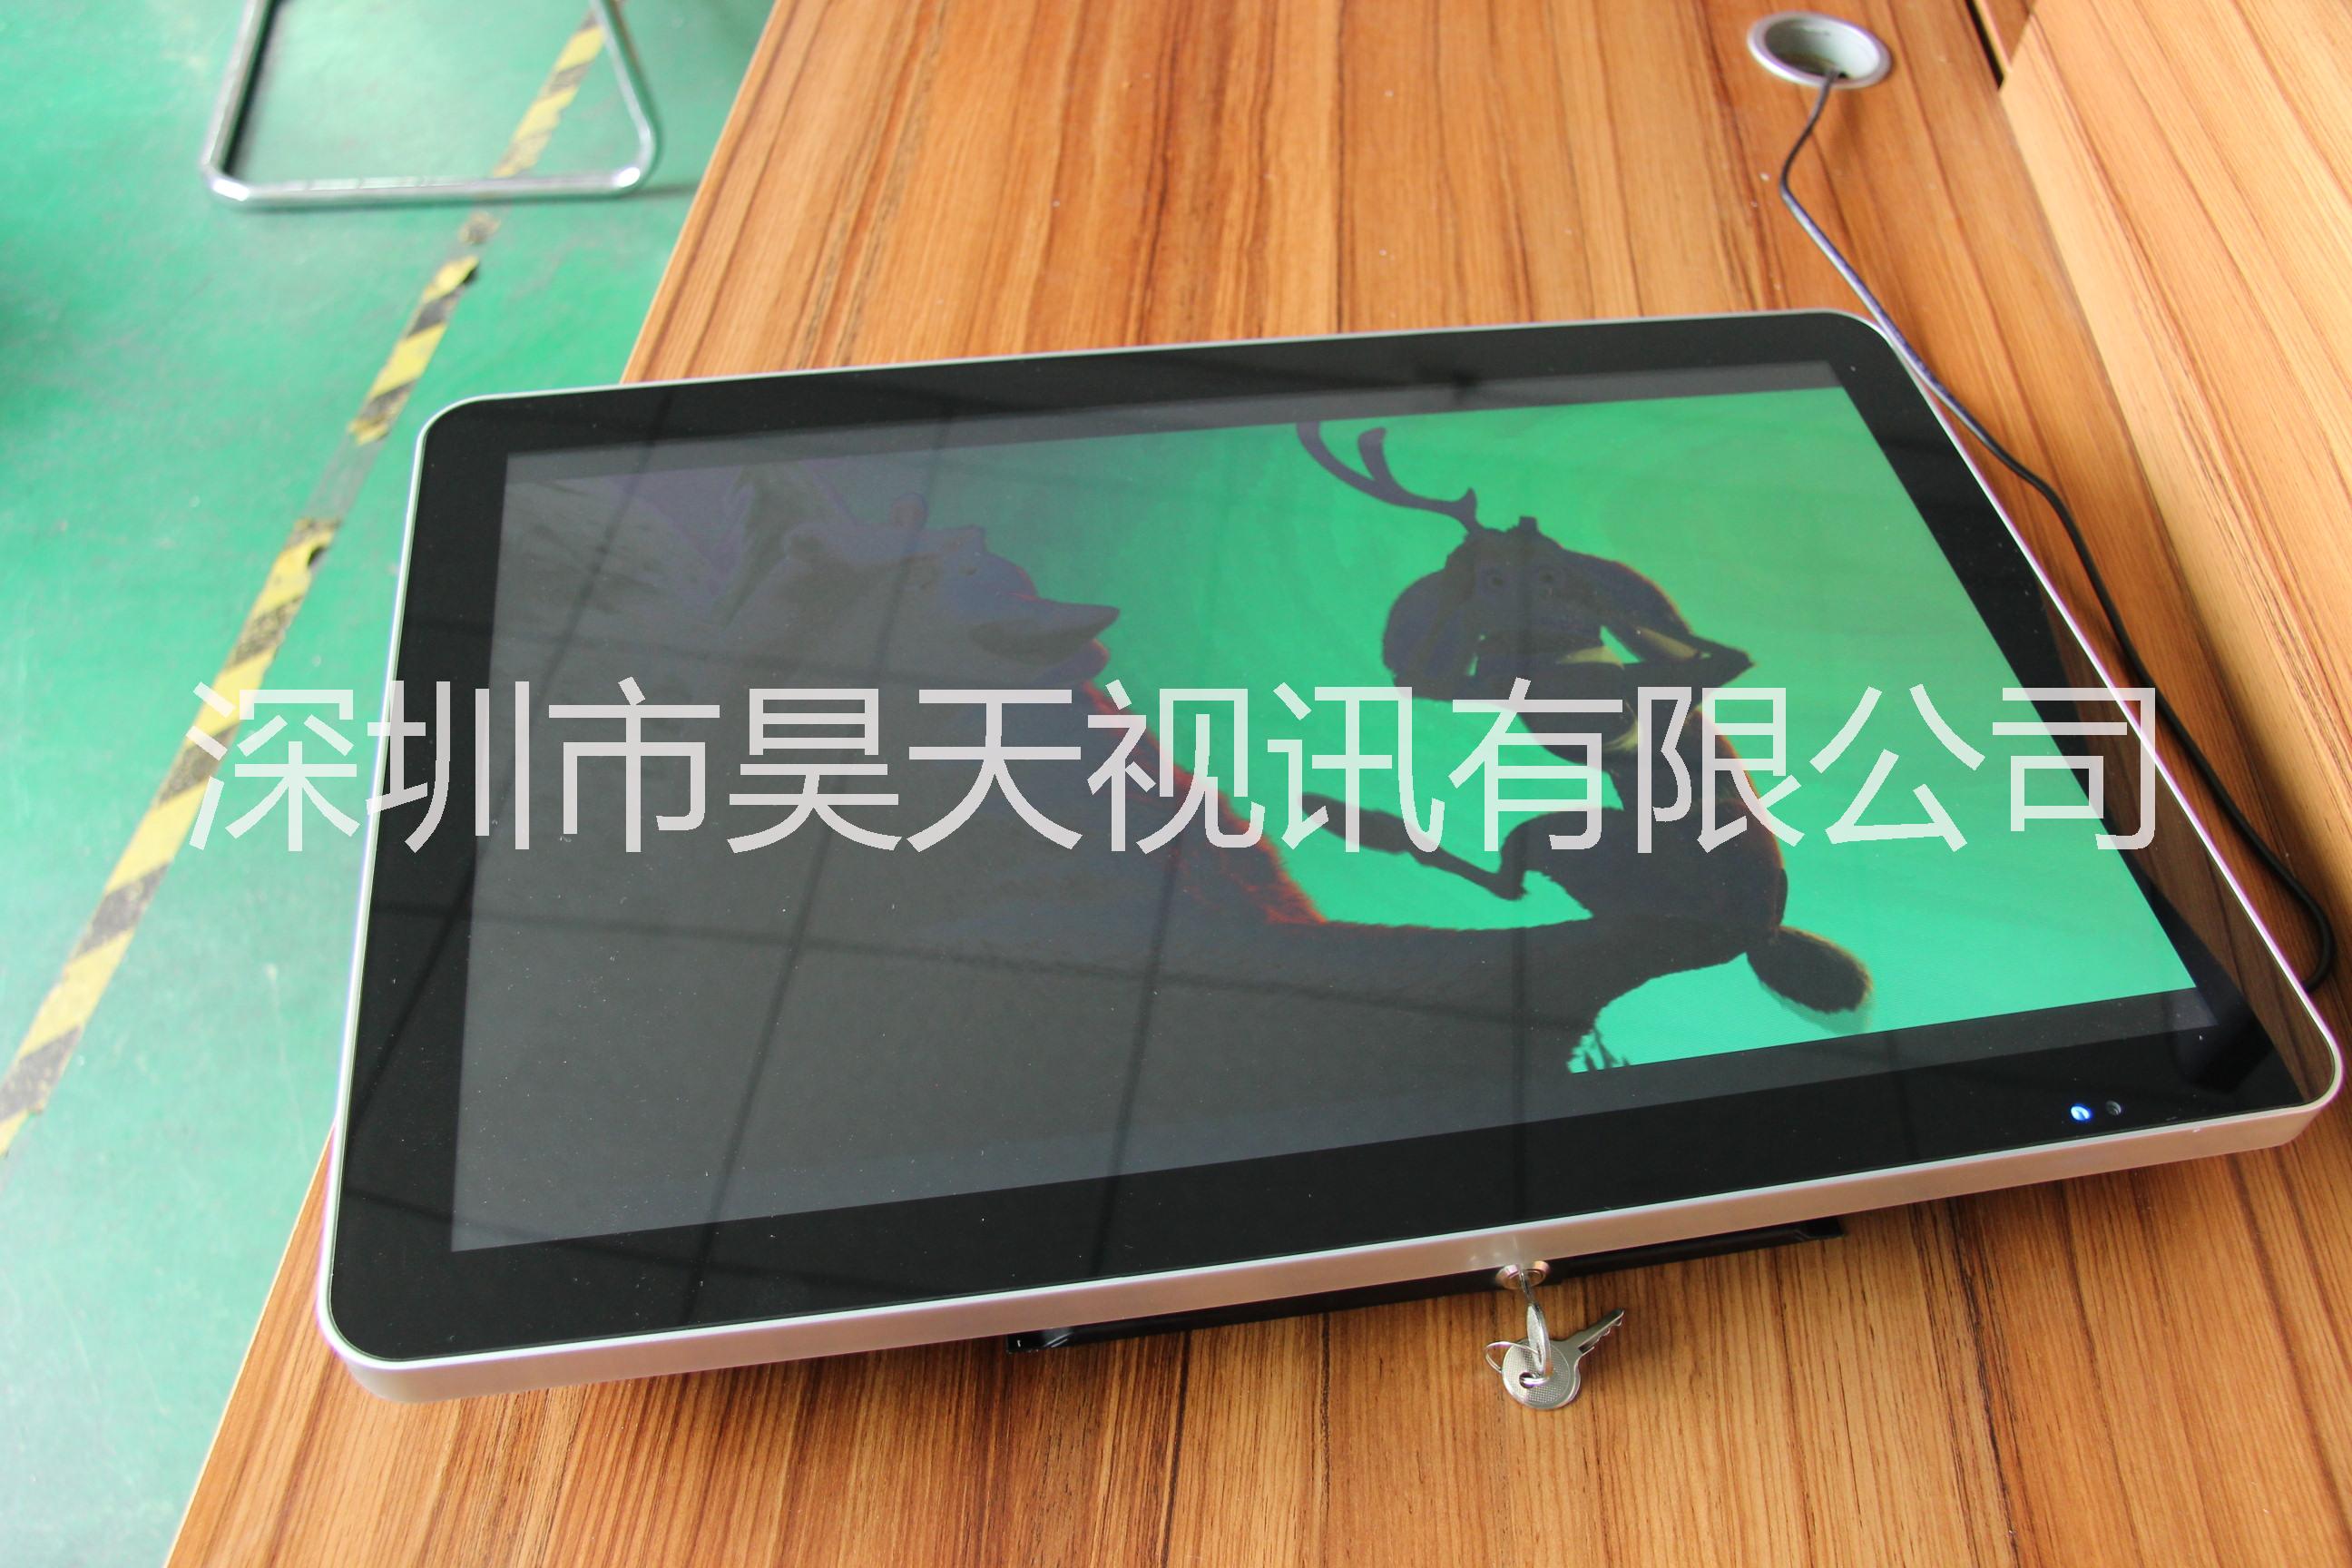 深圳市21.5寸挂式仿苹果款液晶显示器厂家供应江苏 21.5寸挂式仿苹果款液晶显示器